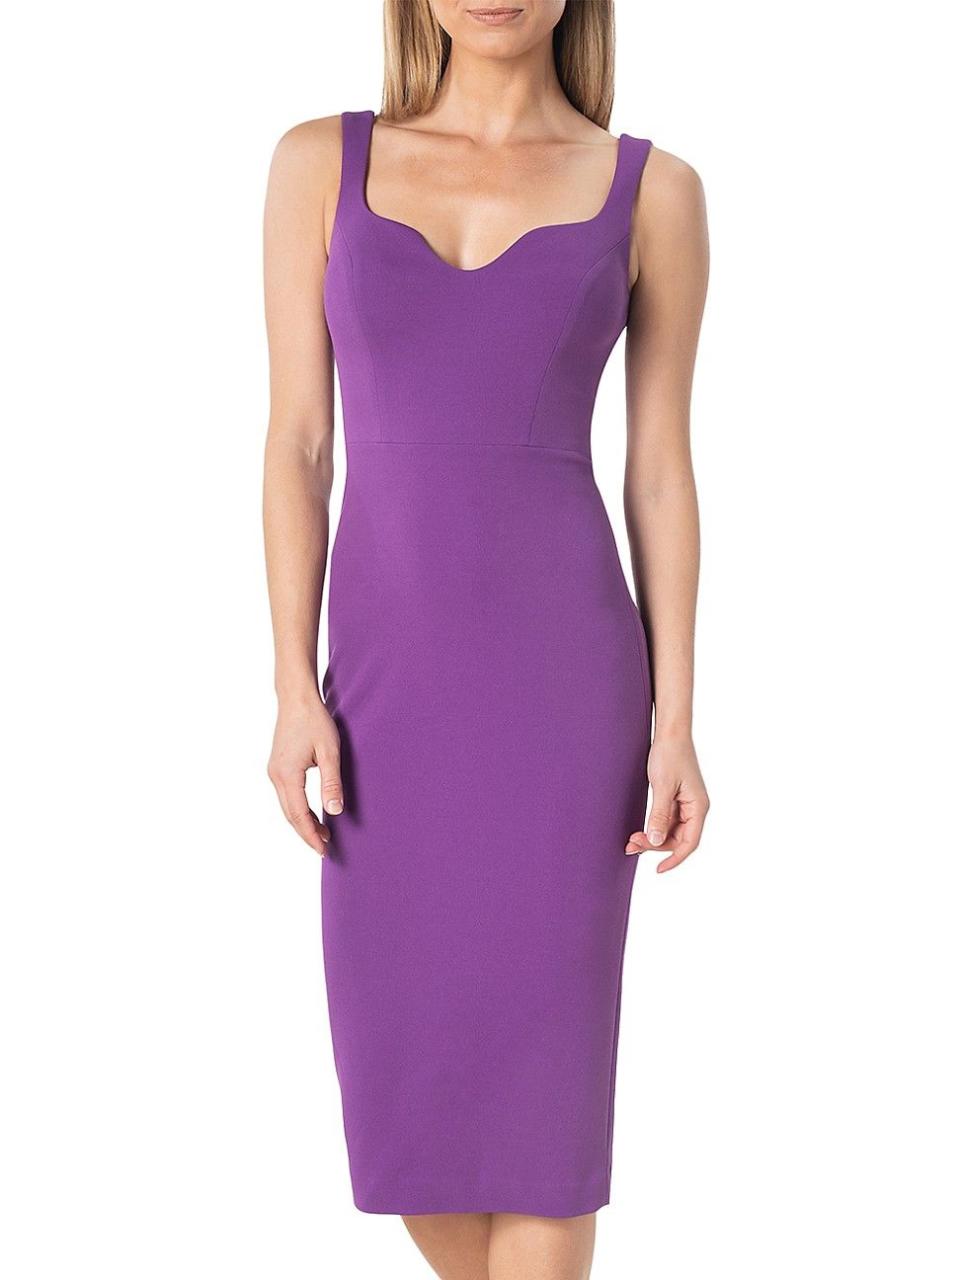 6) Sloane Body-Con Midi-Dress